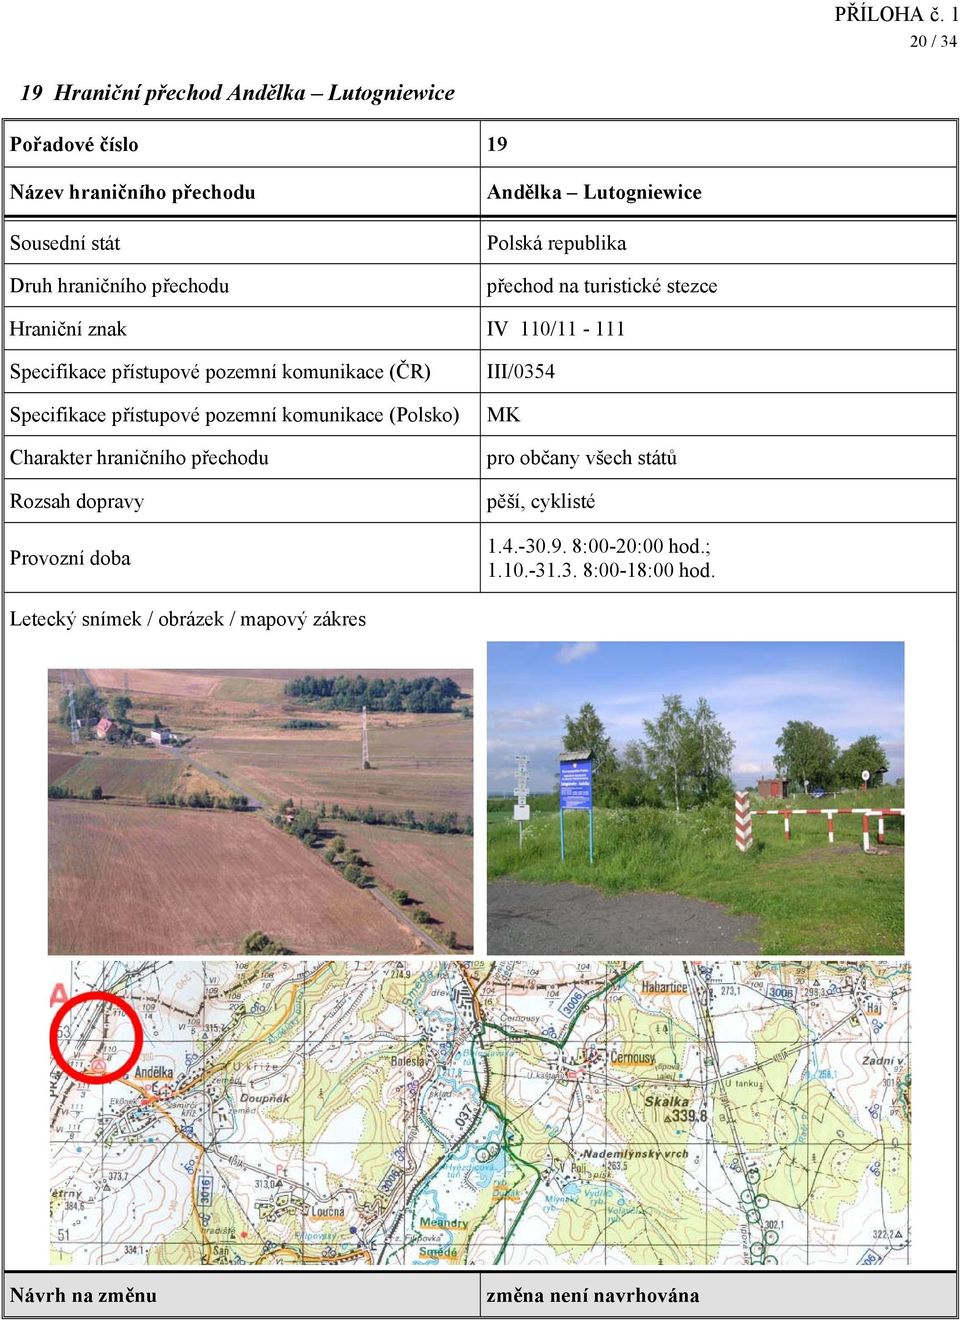 přístupové pozemní komunikace (Polsko) III/0354 pěší, cyklisté 1.4.-30.9.